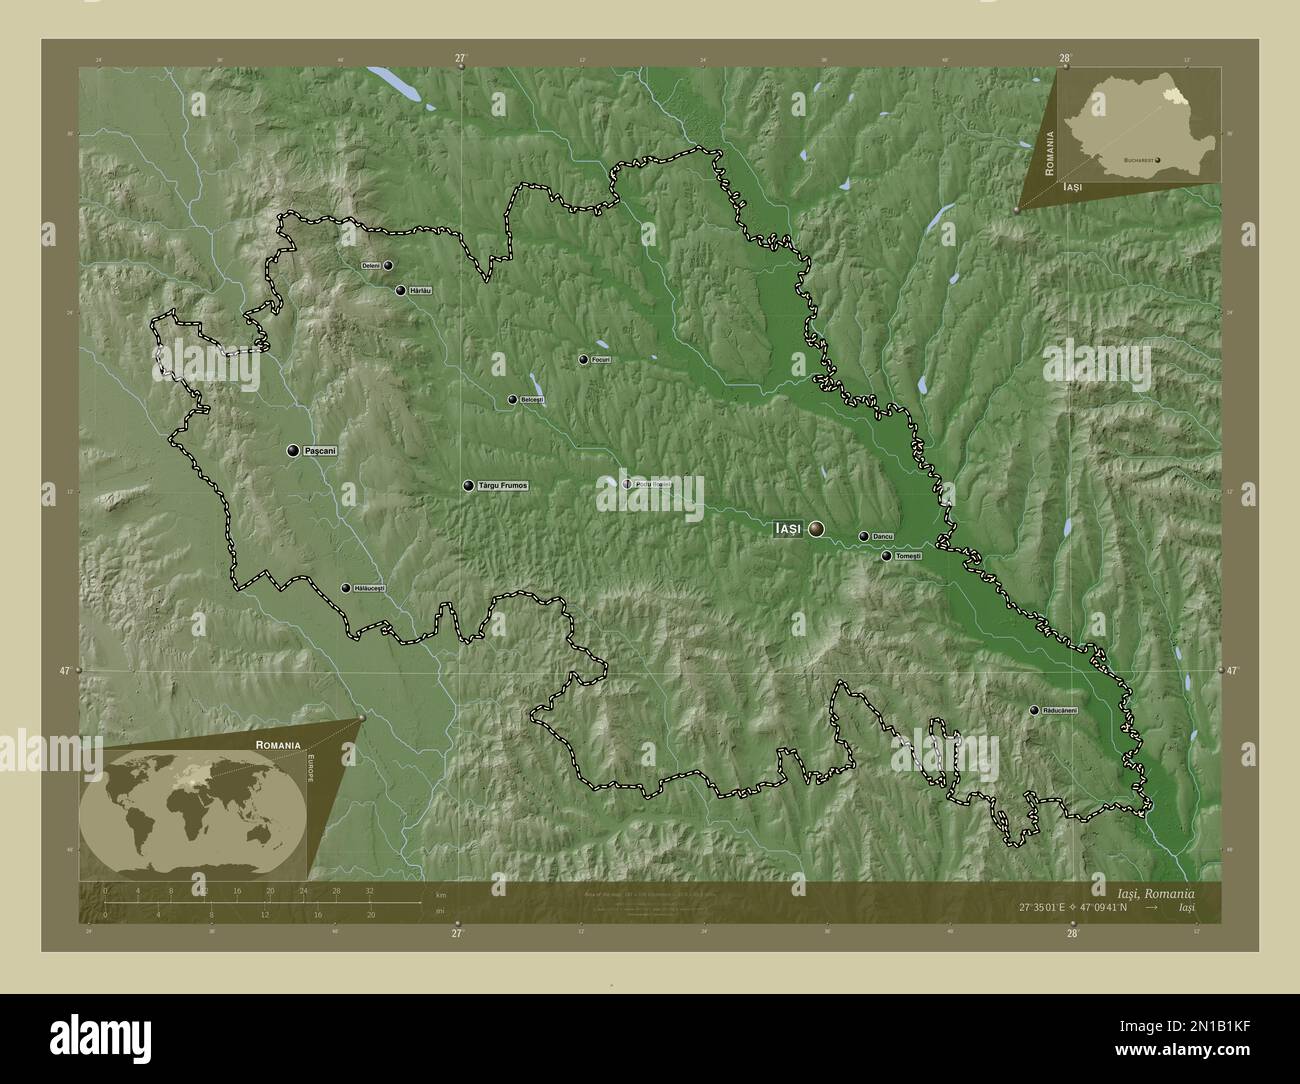 Iasi, contea della Romania. Mappa dell'altitudine colorata in stile wiki con laghi e fiumi. Località e nomi delle principali città della regione. Ausiliario angolo Foto Stock